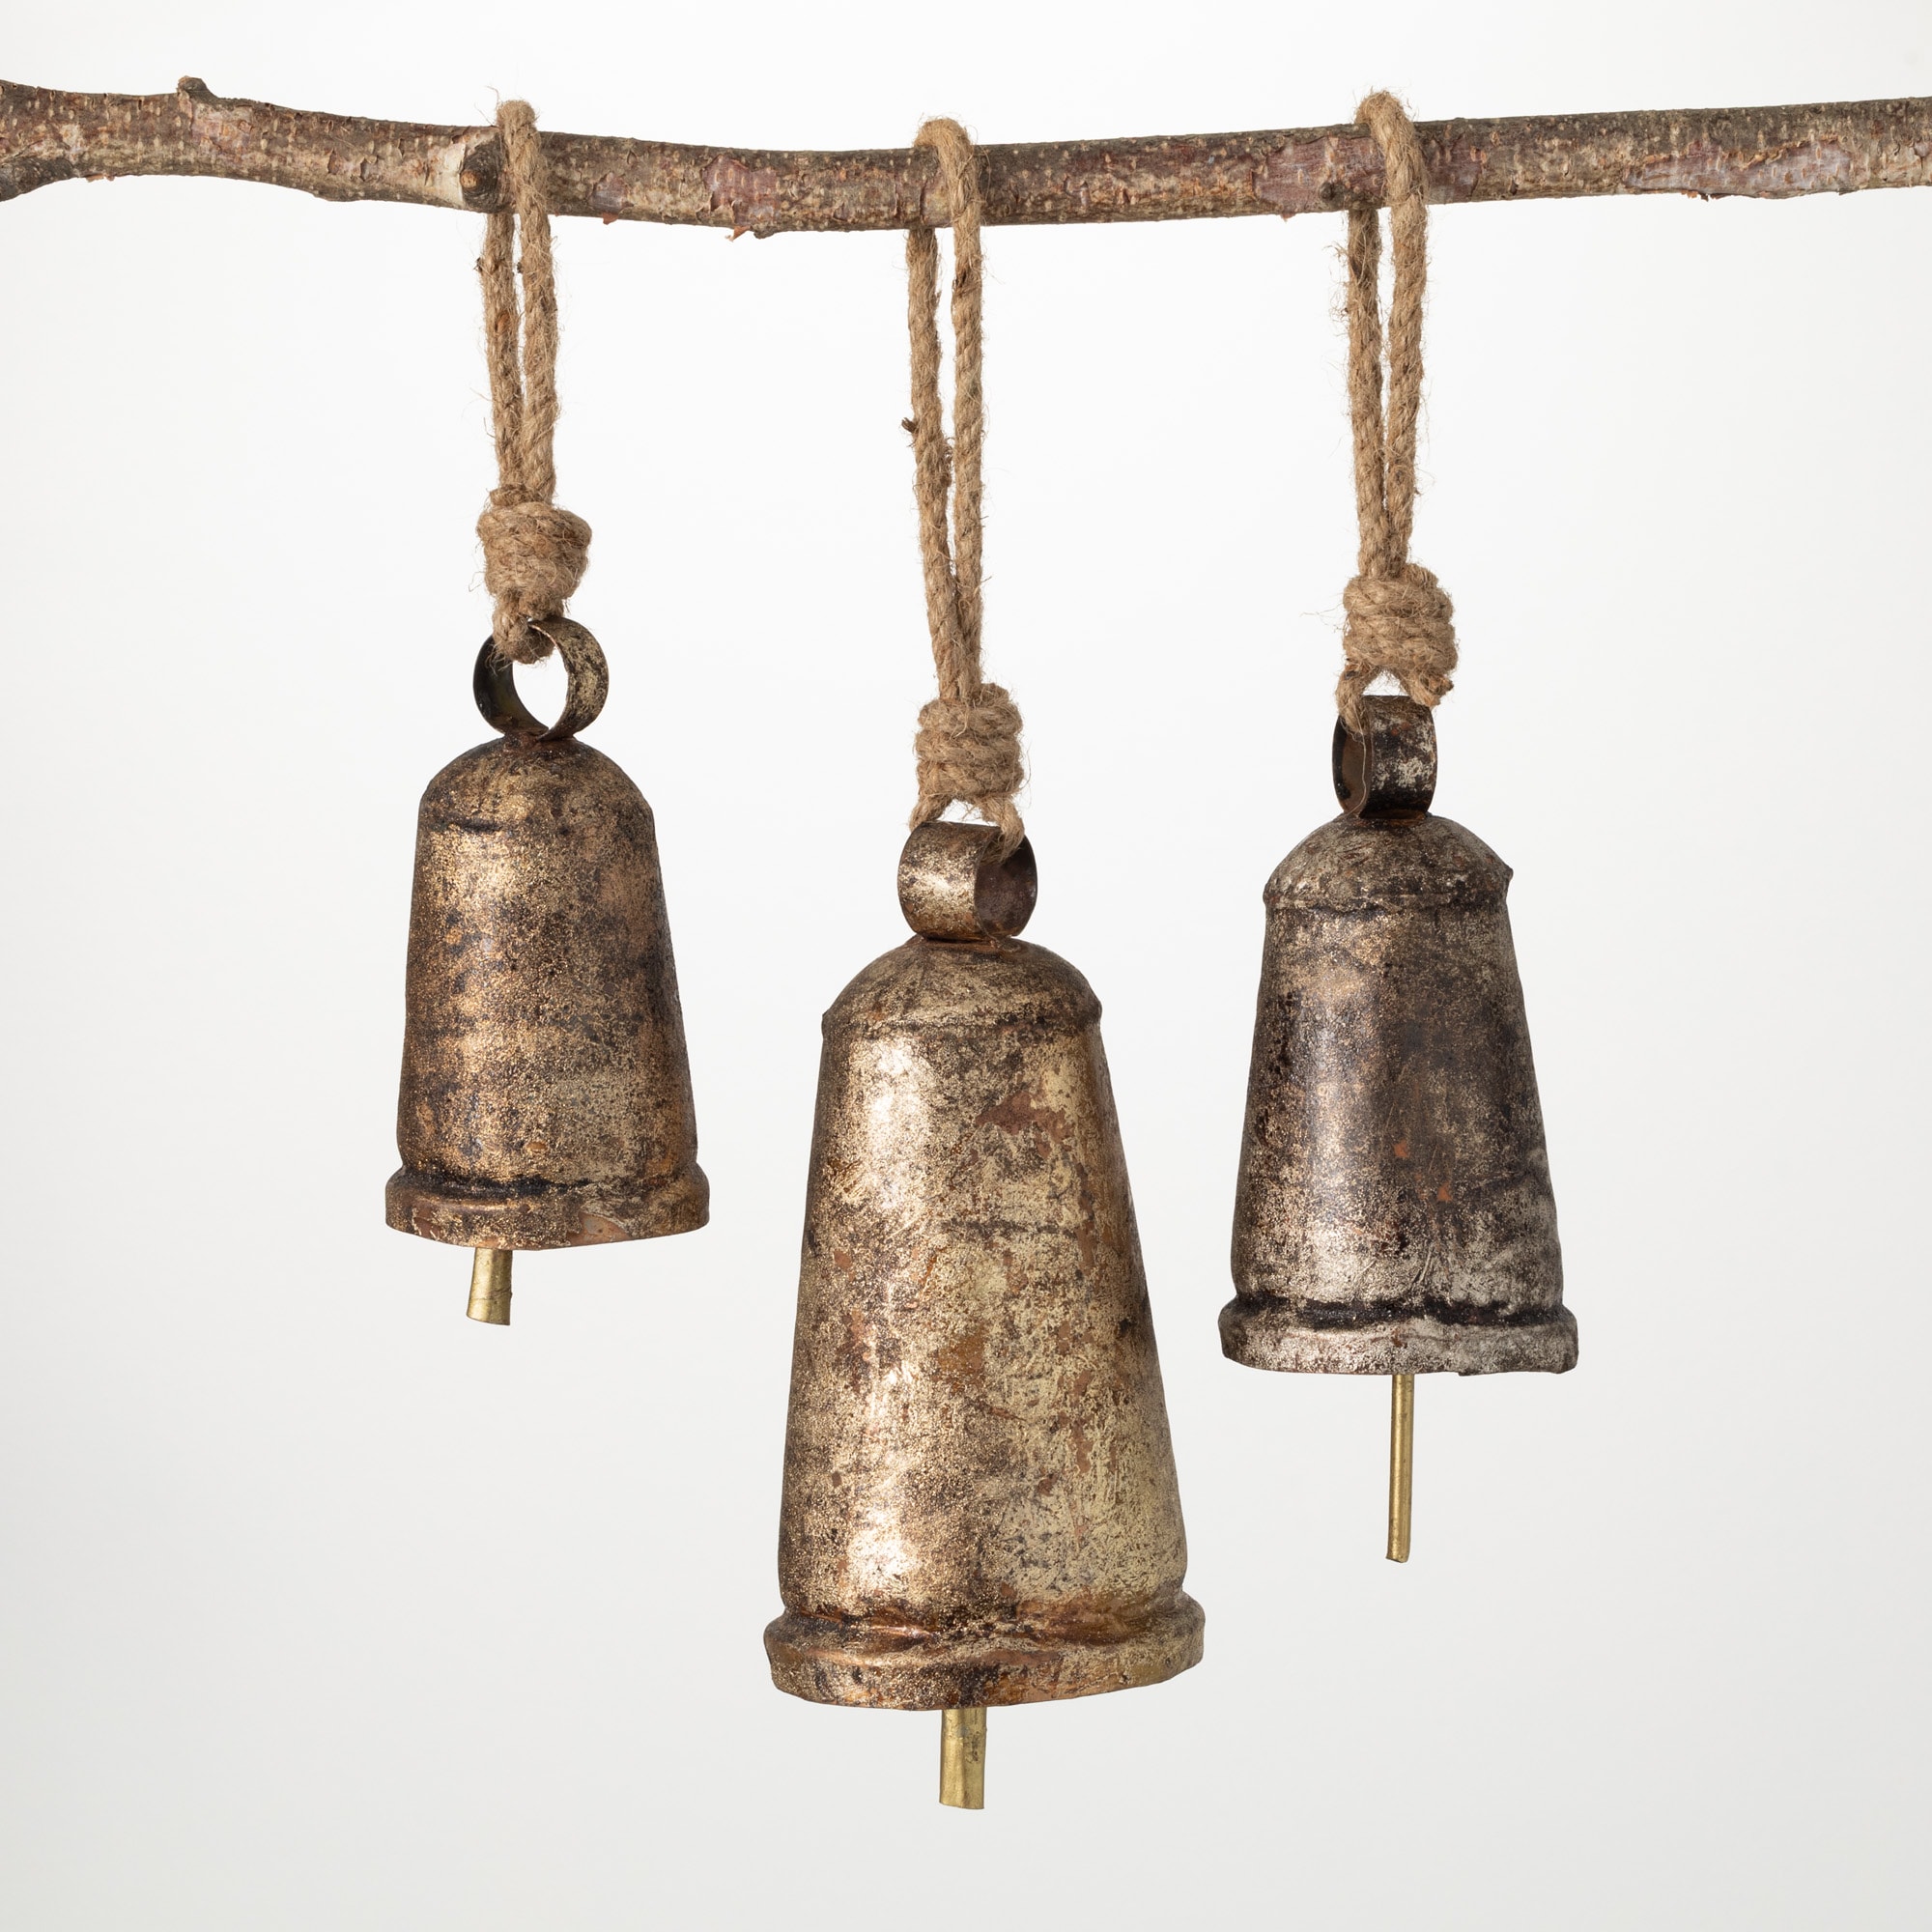 100 Pieces Vintage Bells Craft Bells Small Hanging Bells Ornaments